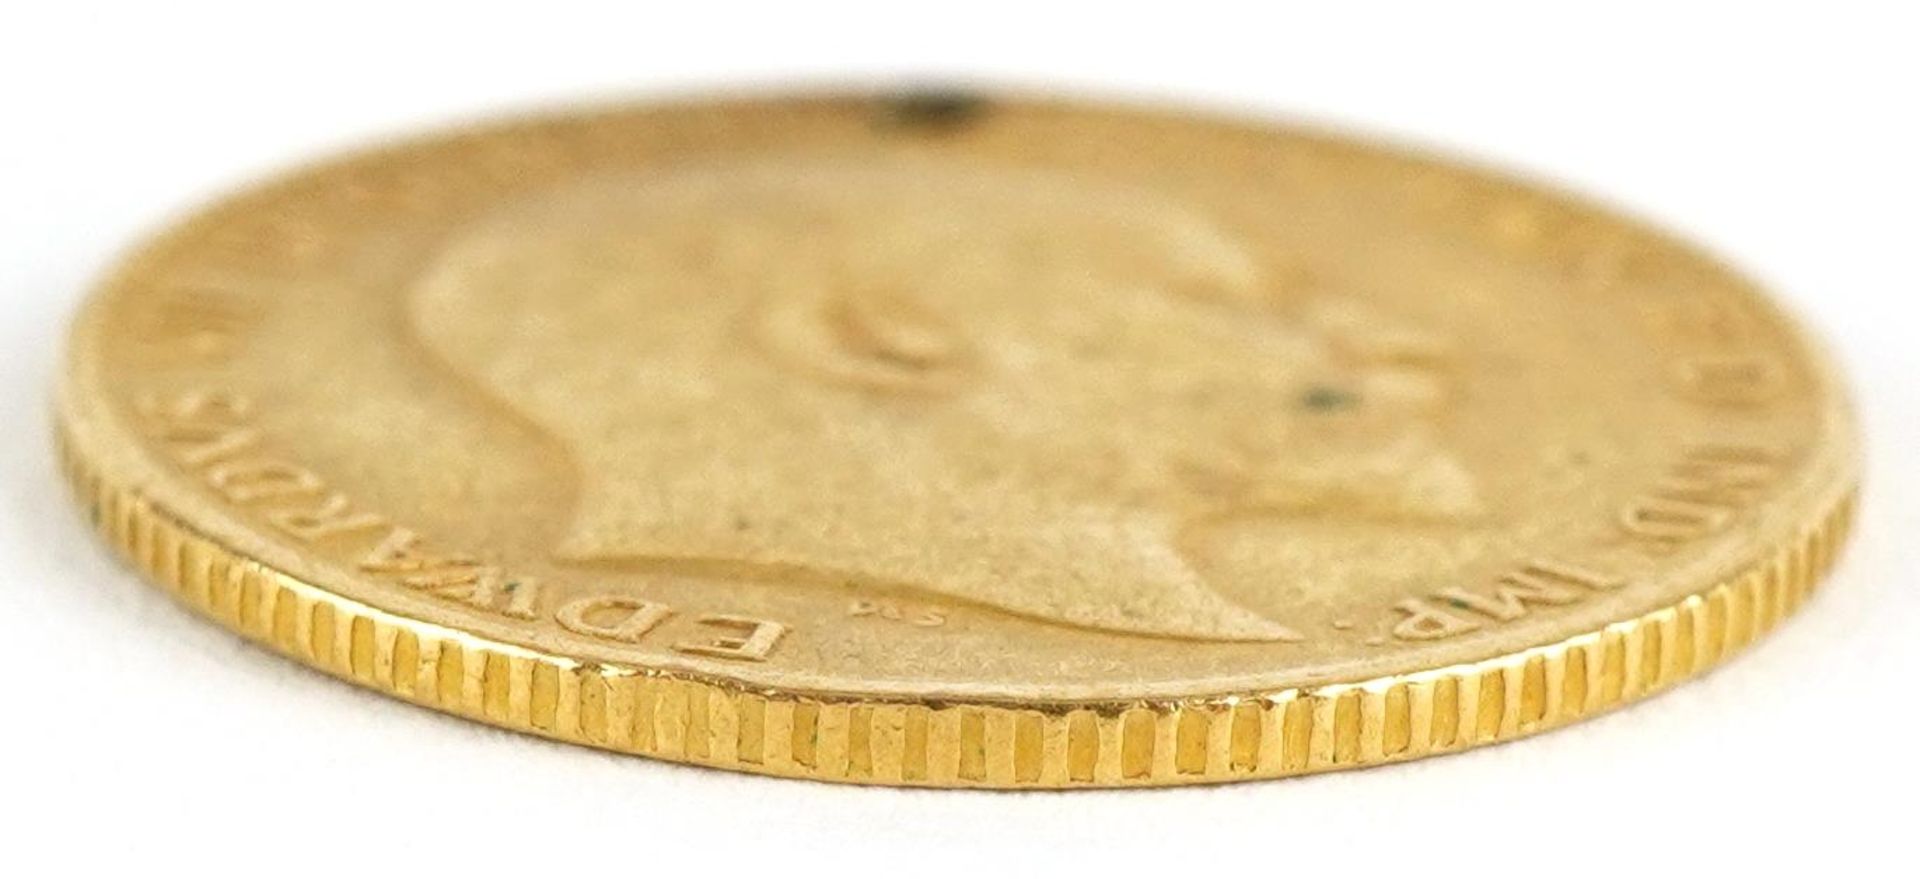 Edward VII 1905 gold half sovereign - Image 3 of 3